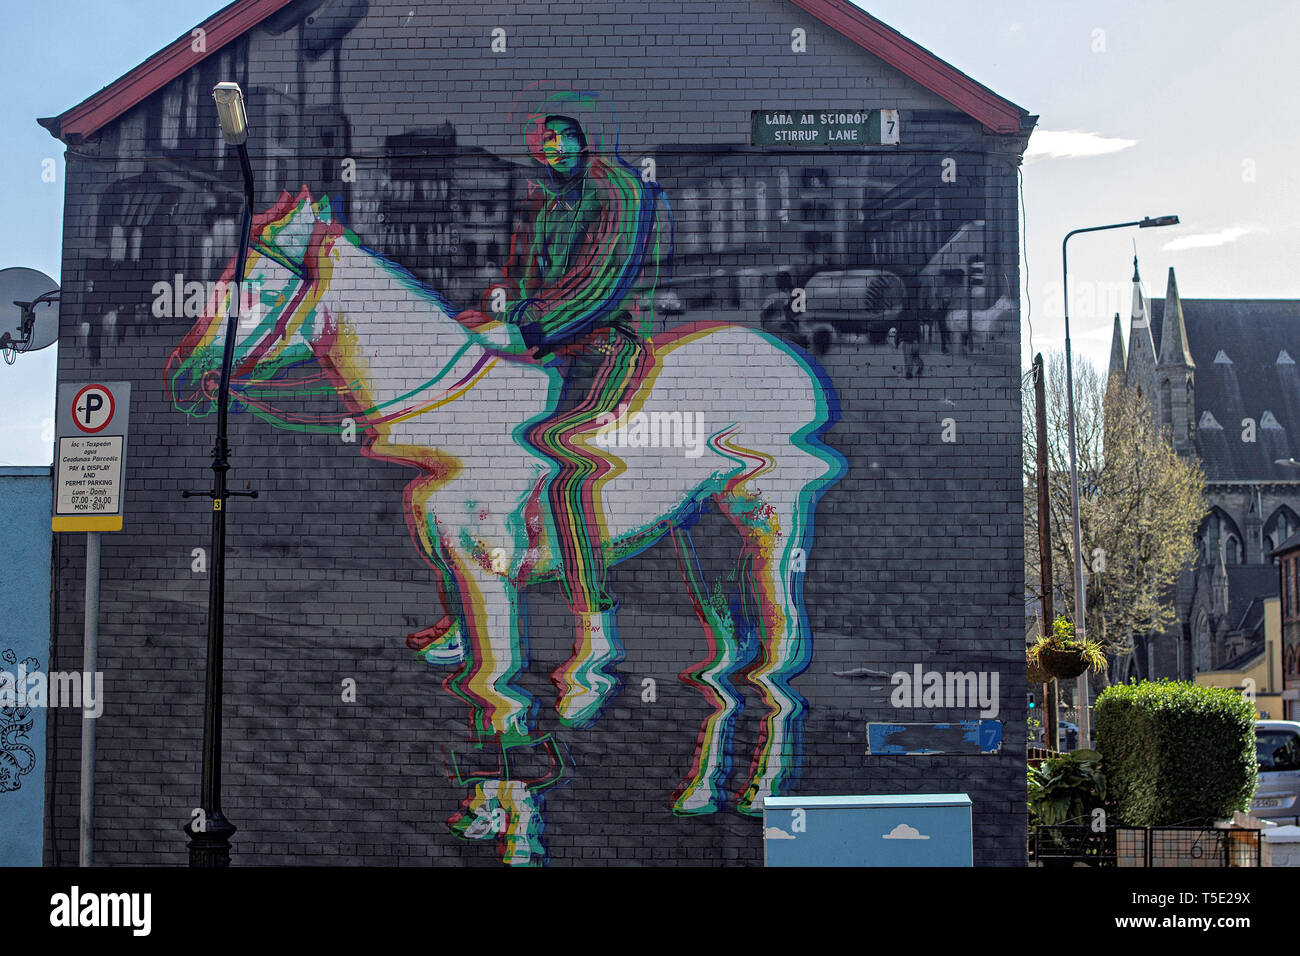 La apt mural de un joven en un caballo en estribo Lane, Dublin 7. Esta obra de arte de los artistas es subconjunto cooperativo Foto de stock